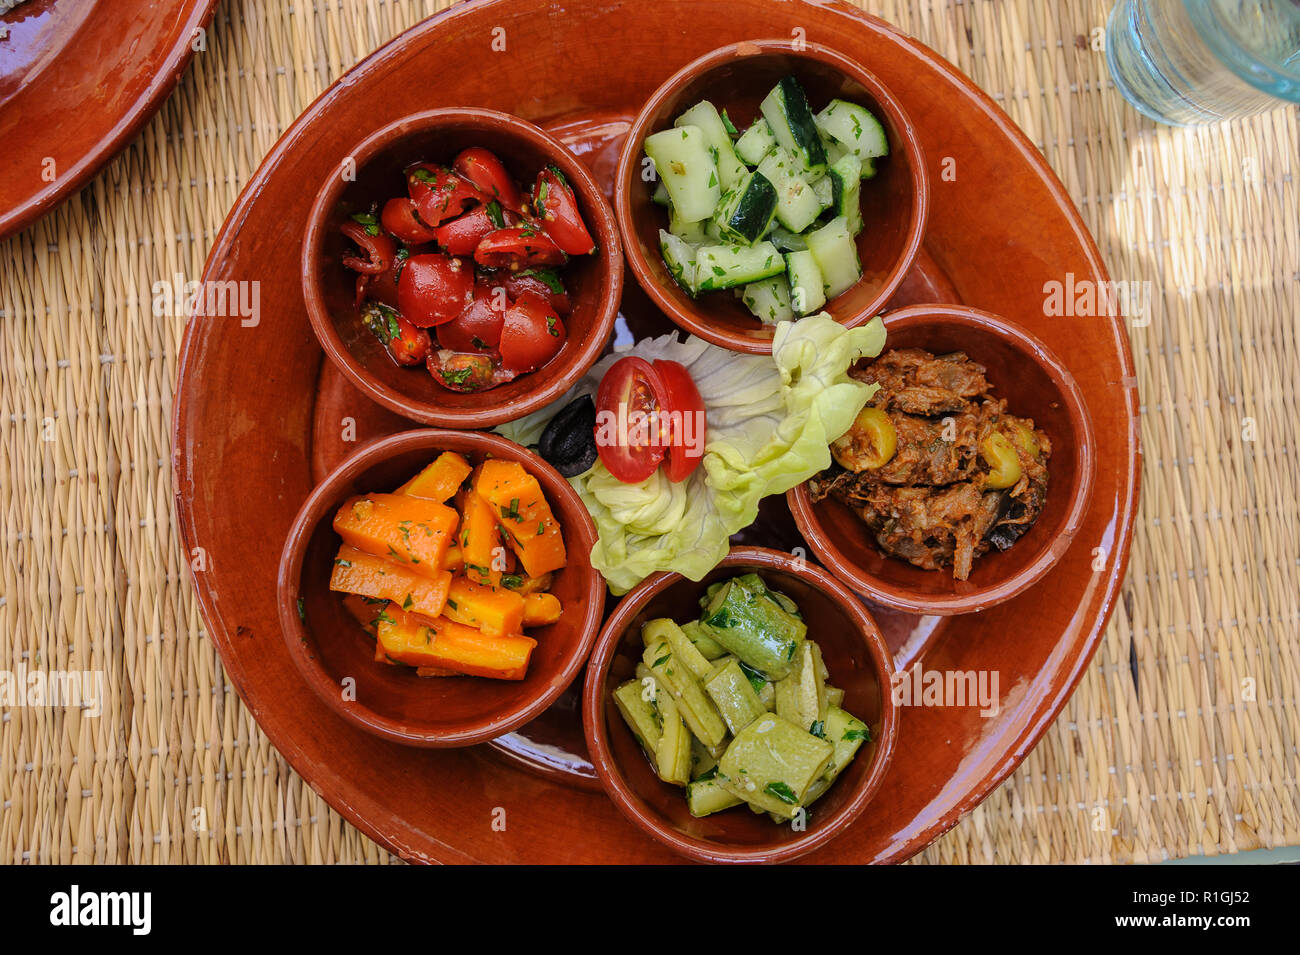 18-04-11. Marrakech, Maroc. Salade marocaine typique de légumes et de légumes marinés. Photo © Simon Grosset / Q Photography Banque D'Images